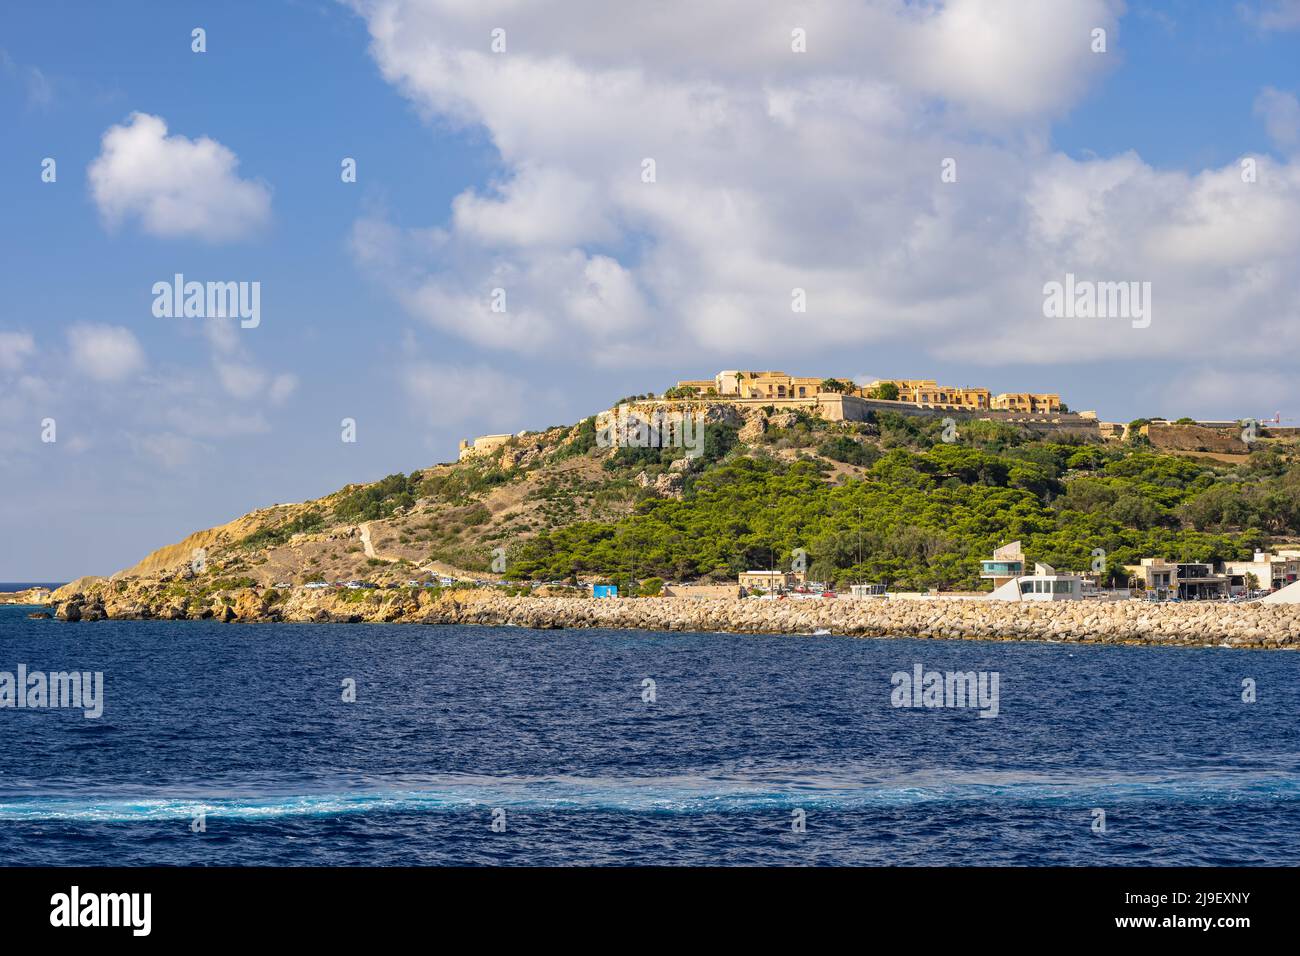 Malta, Isola di Gozo nel Mediterraneo, arcipelago maltese. Foto Stock